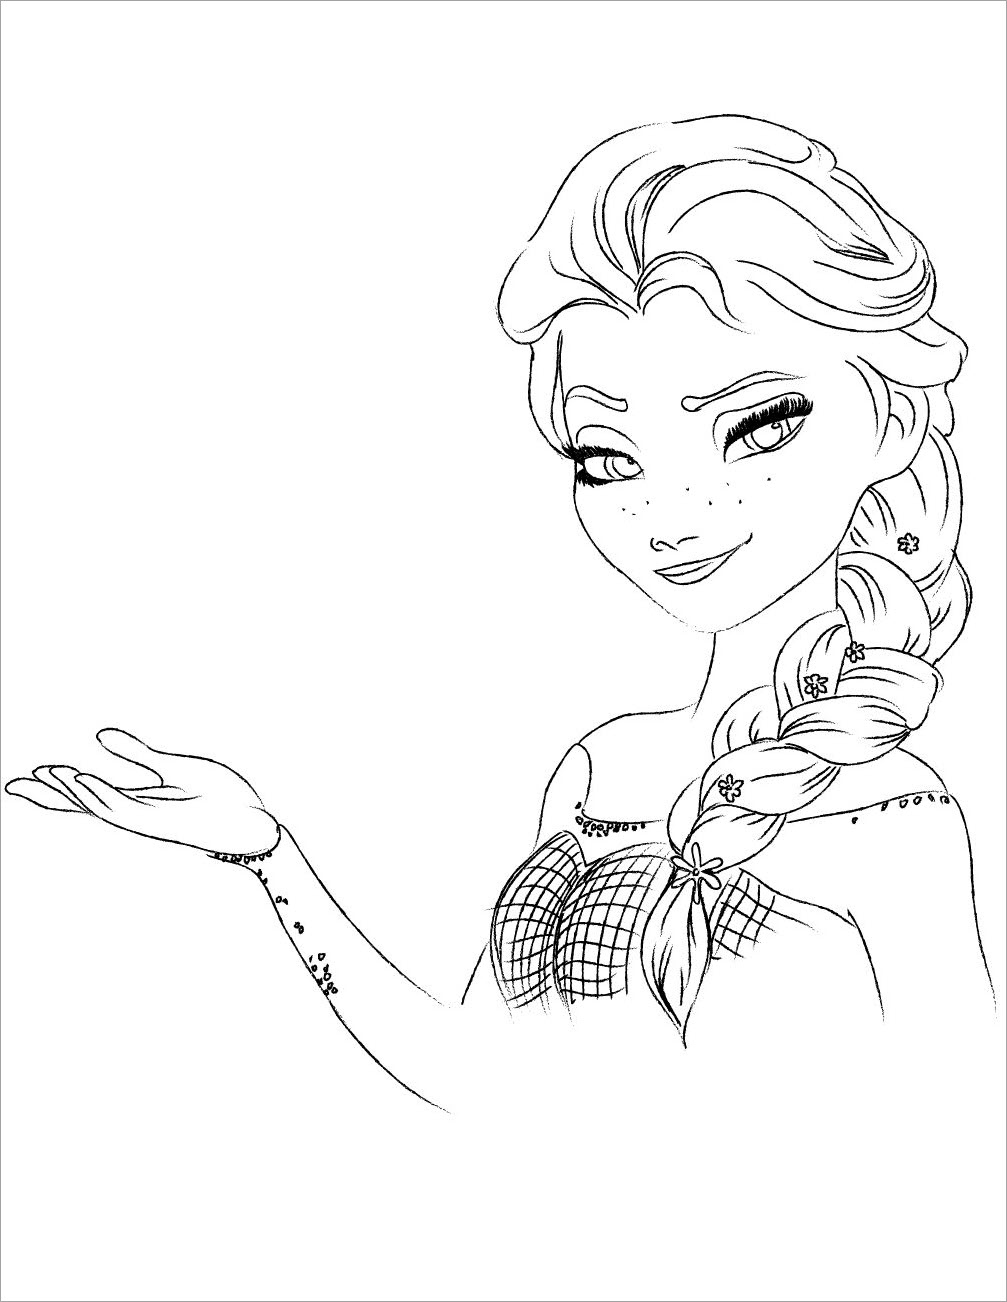 Bộ sưu tập tranh tô màu công chúa Elsa - Những bức tranh tô màu Elsa dành cho bé gái đẹp nhất